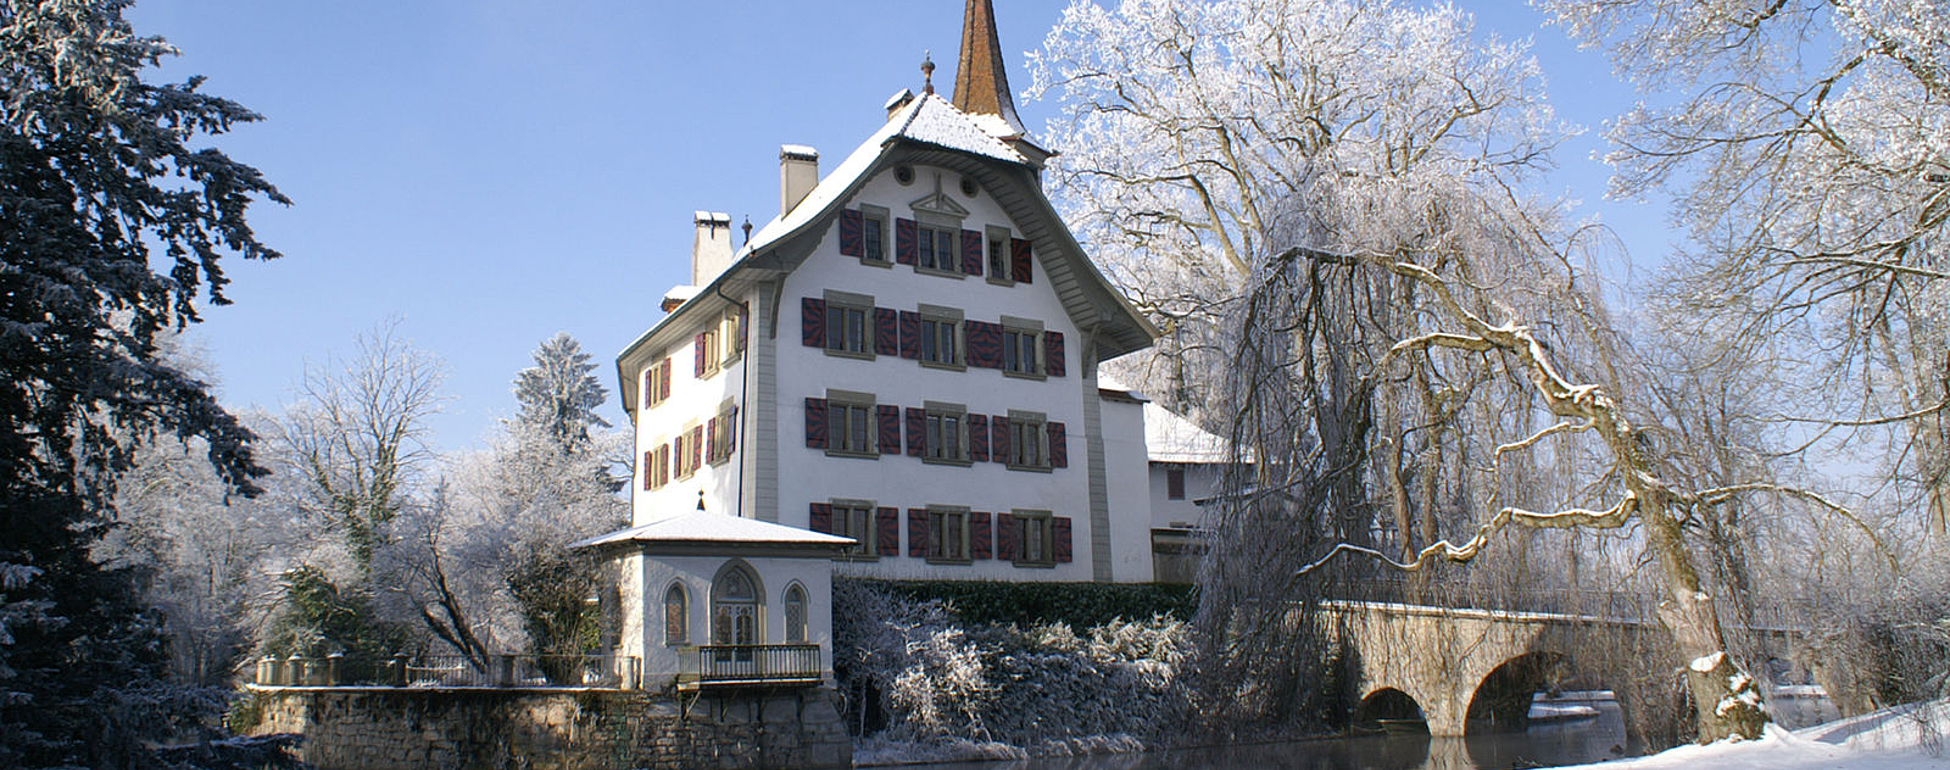 Schloss Landshut